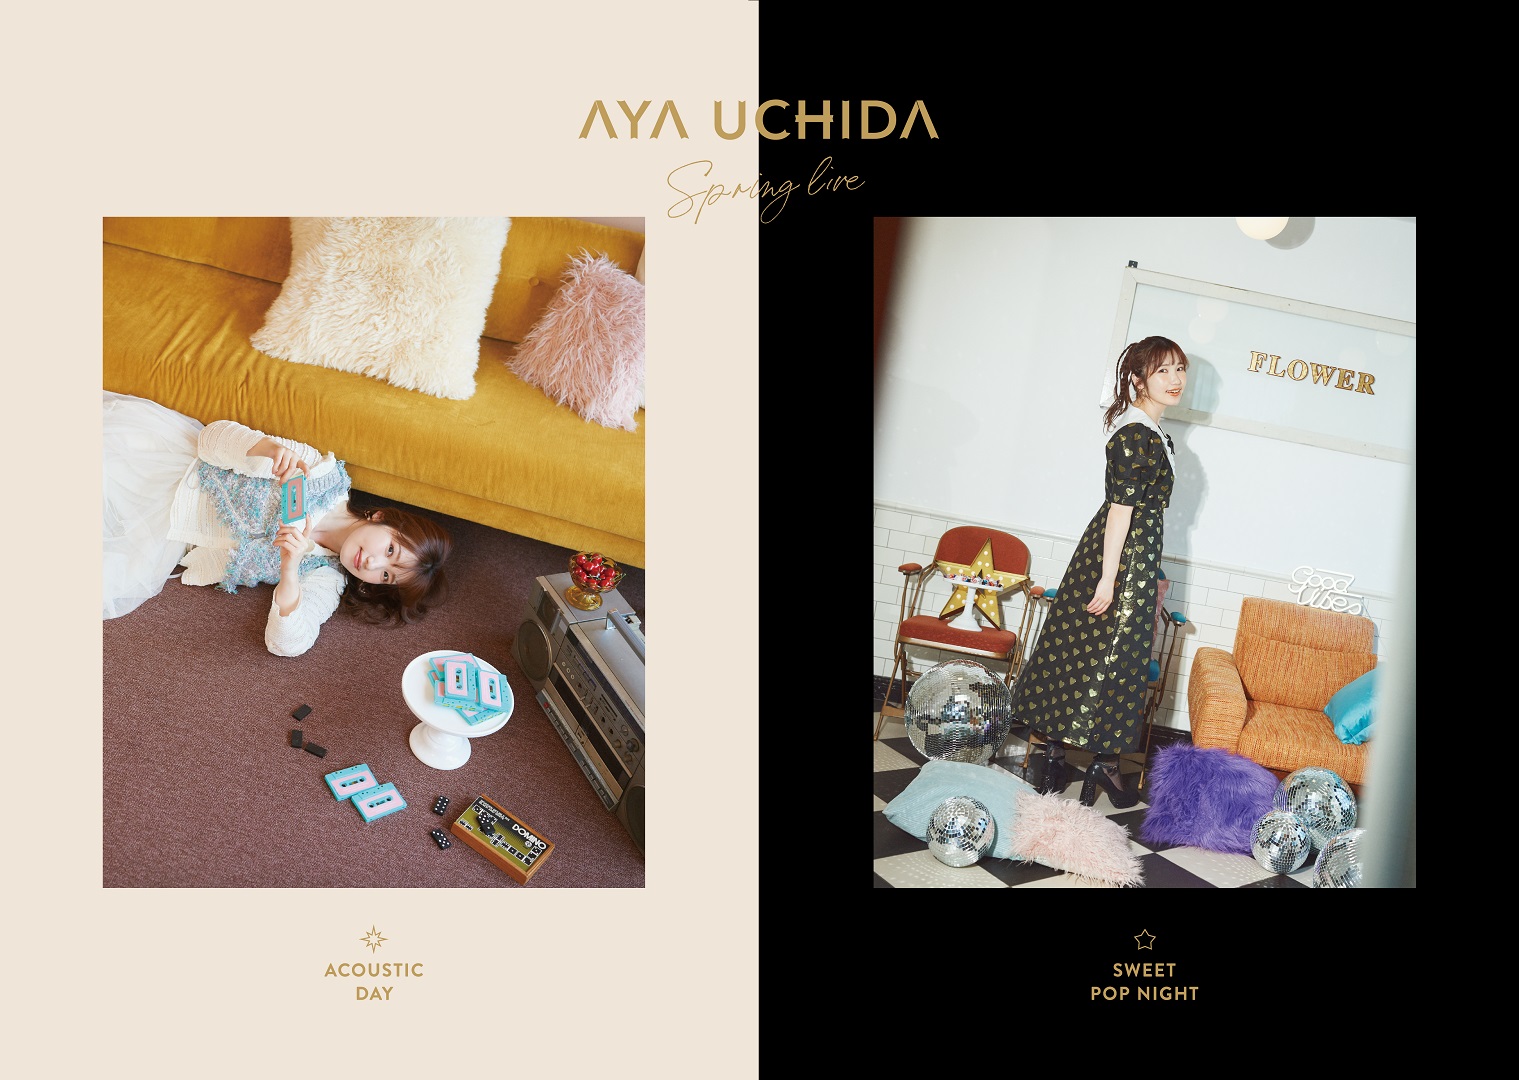 内田彩「AYA UCHIDA SPRING LIVE ACOUSTIC DAY / SWEET POP NIGHT」